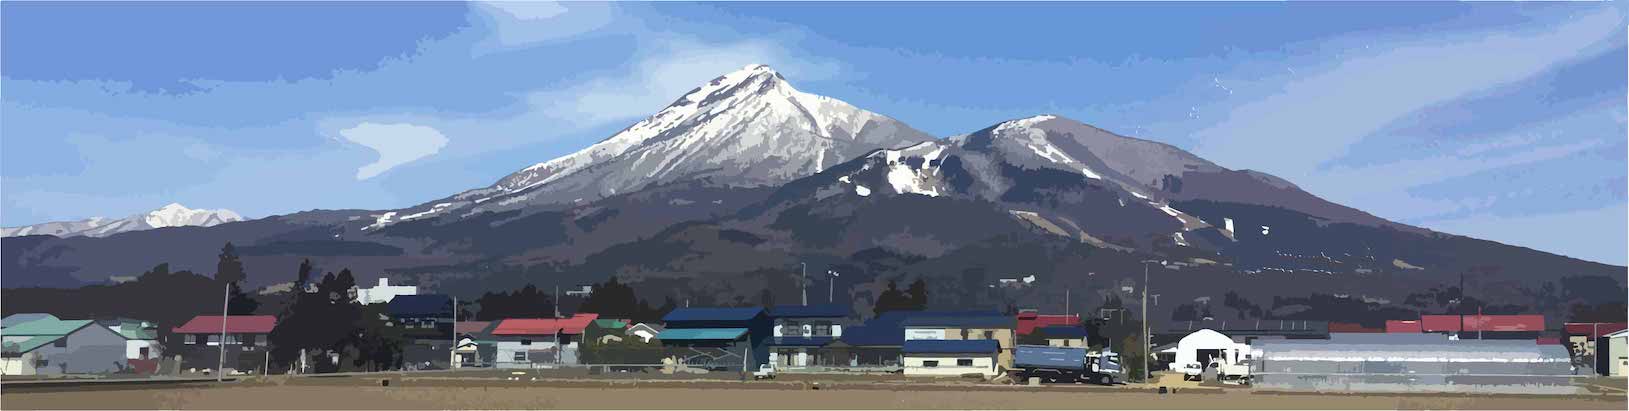 View of Mt. Bandai